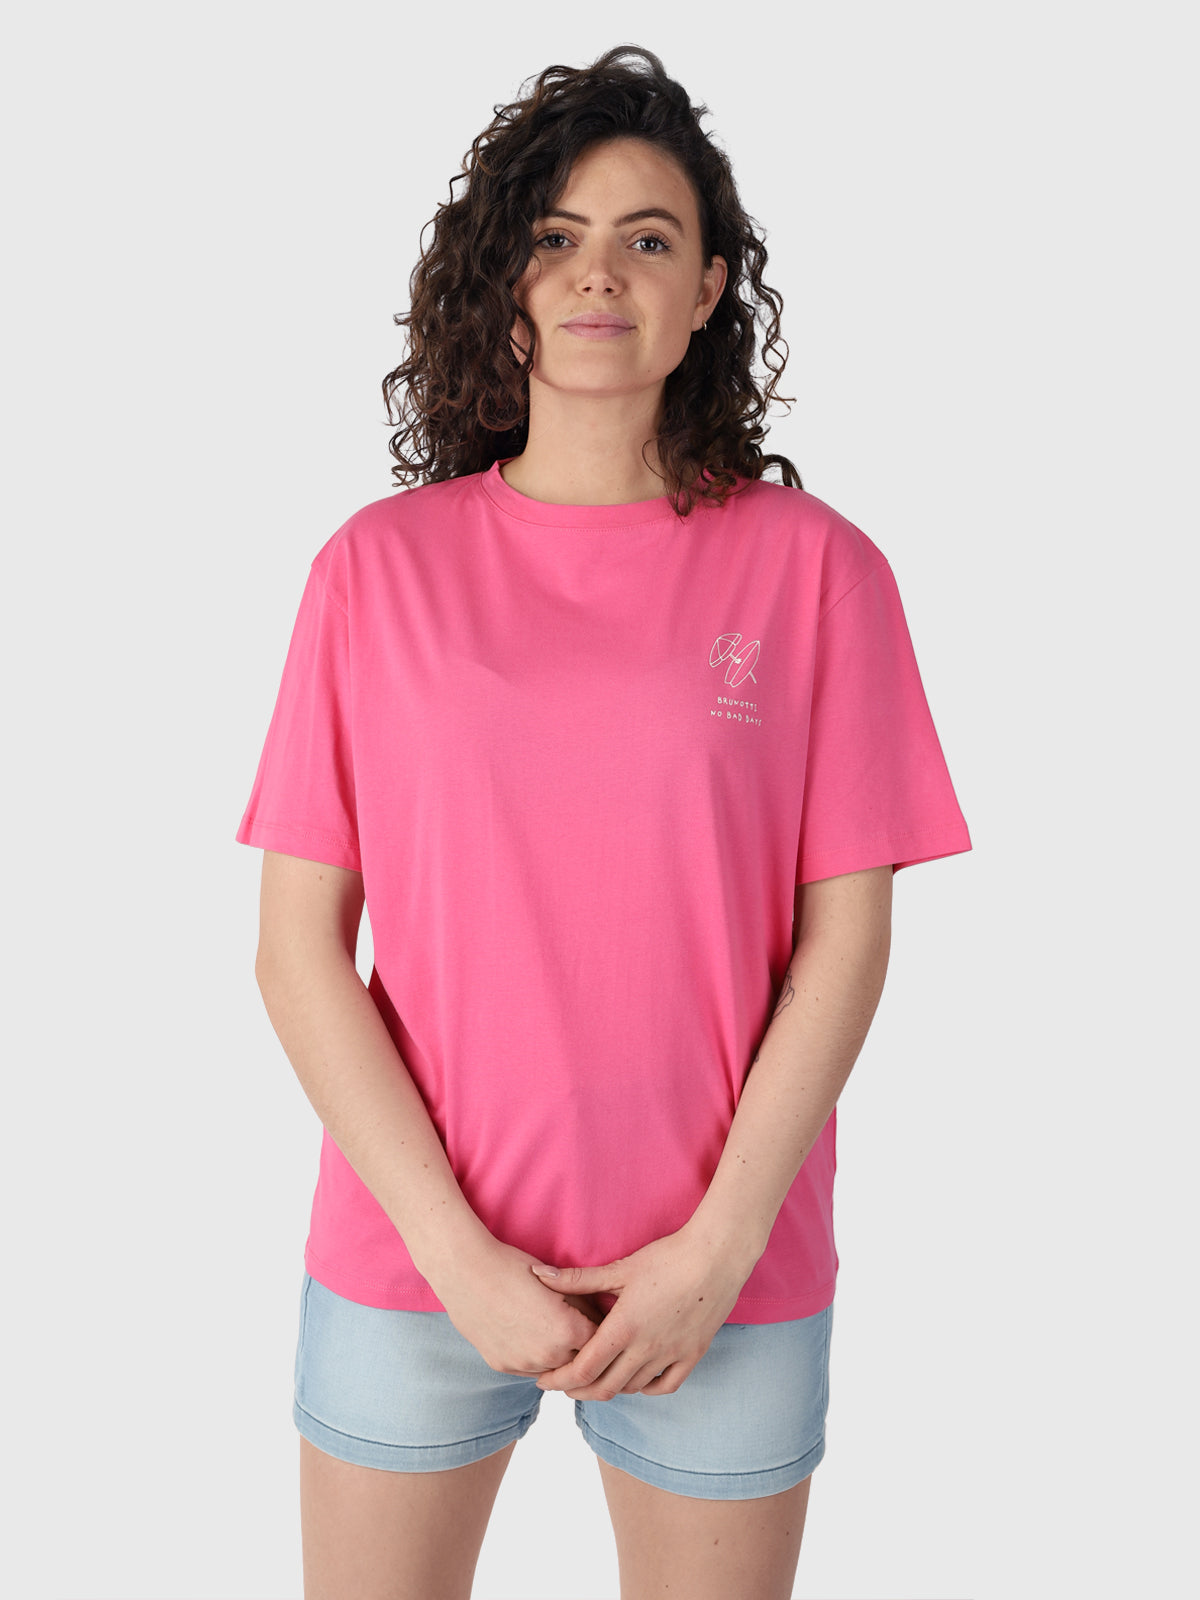 Women - T-Shirts & Tops